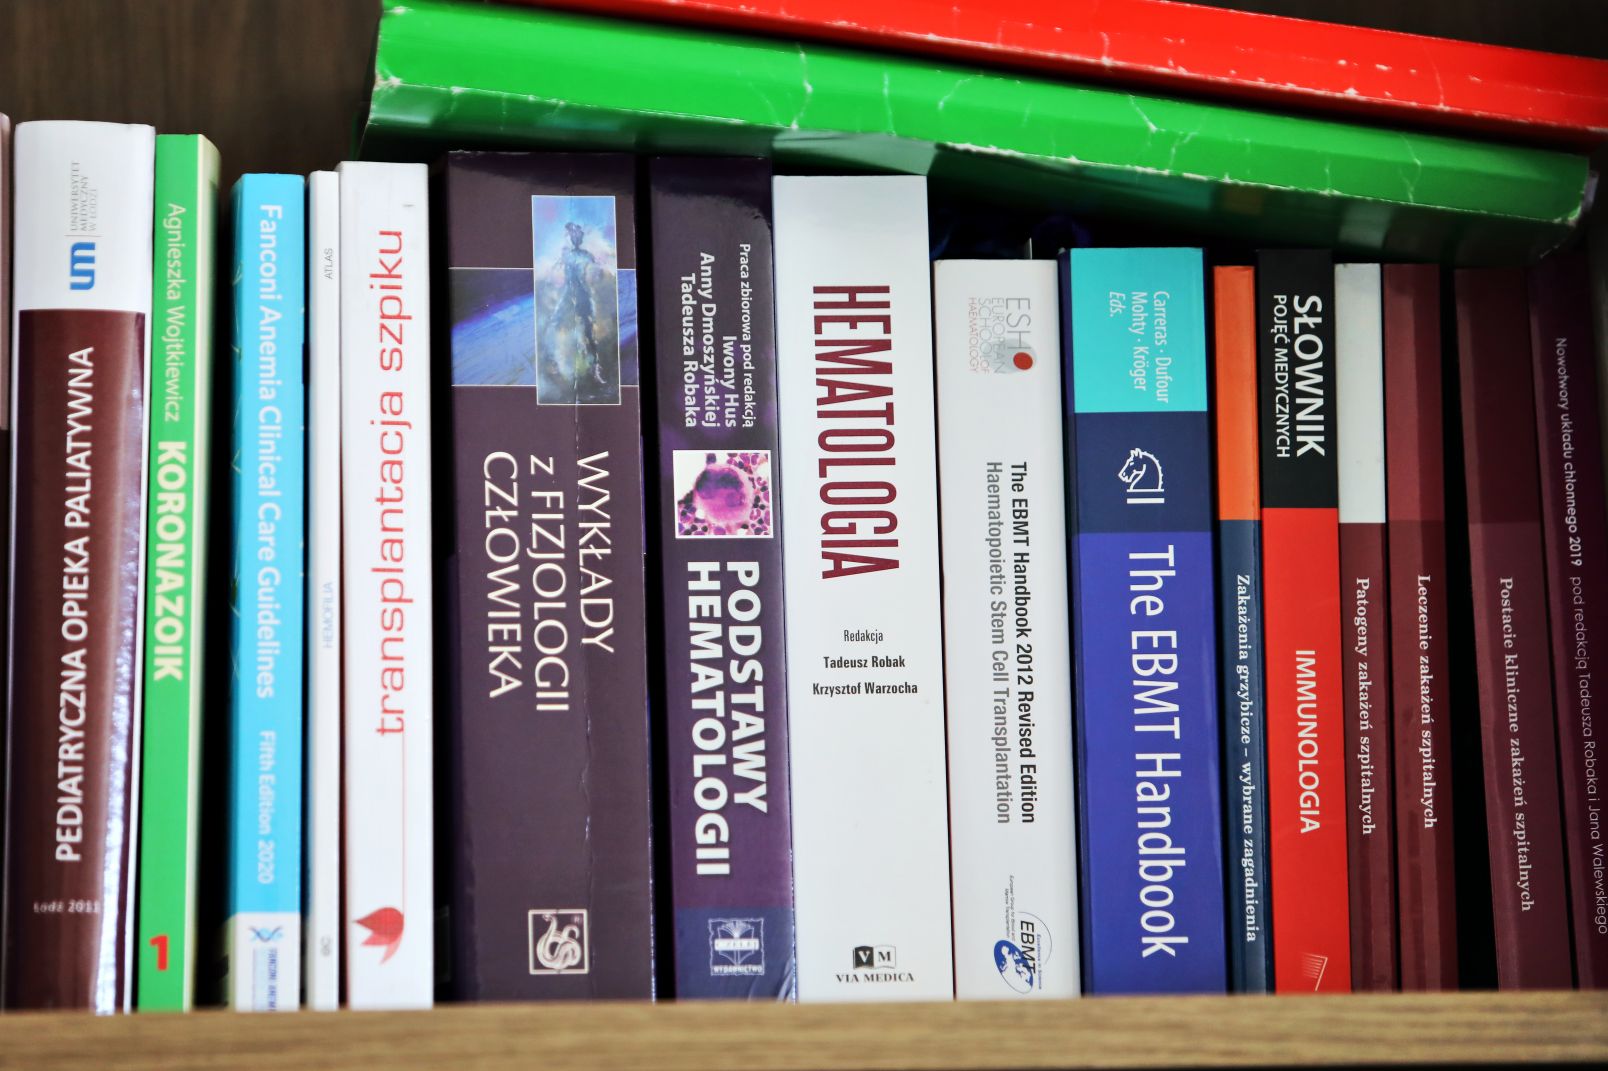 Półka z książkami medycznymi